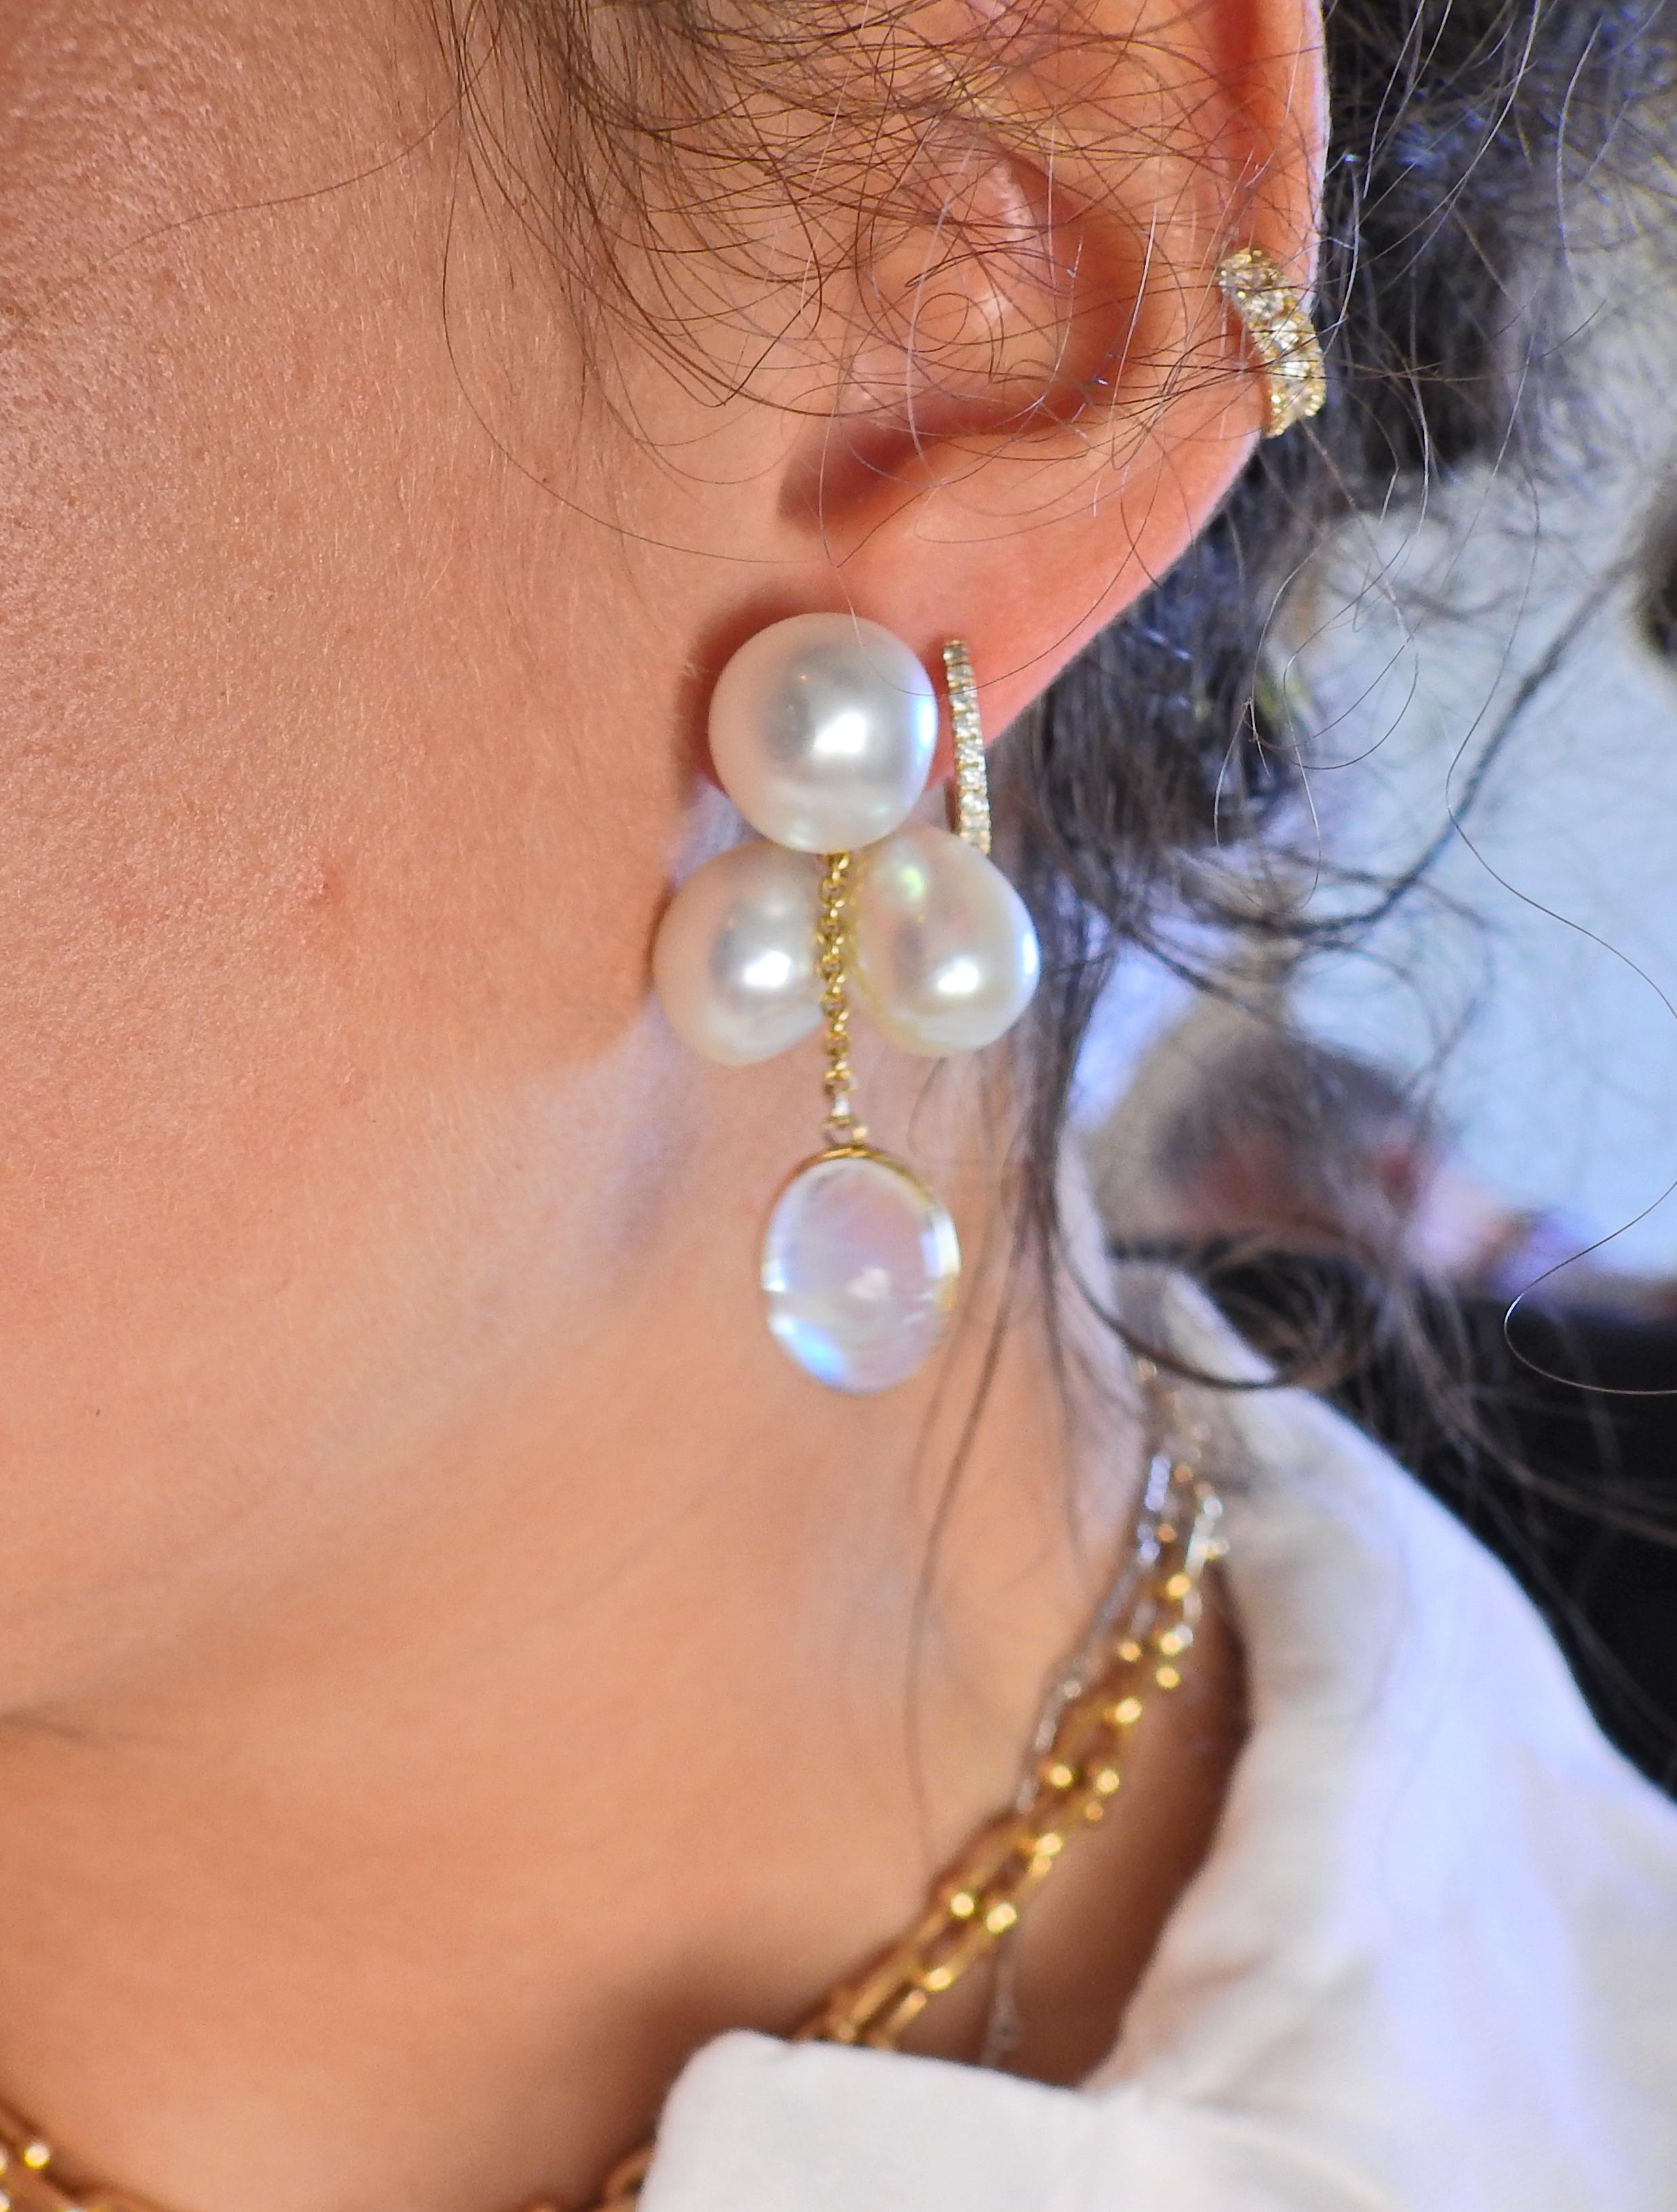 prince earrings